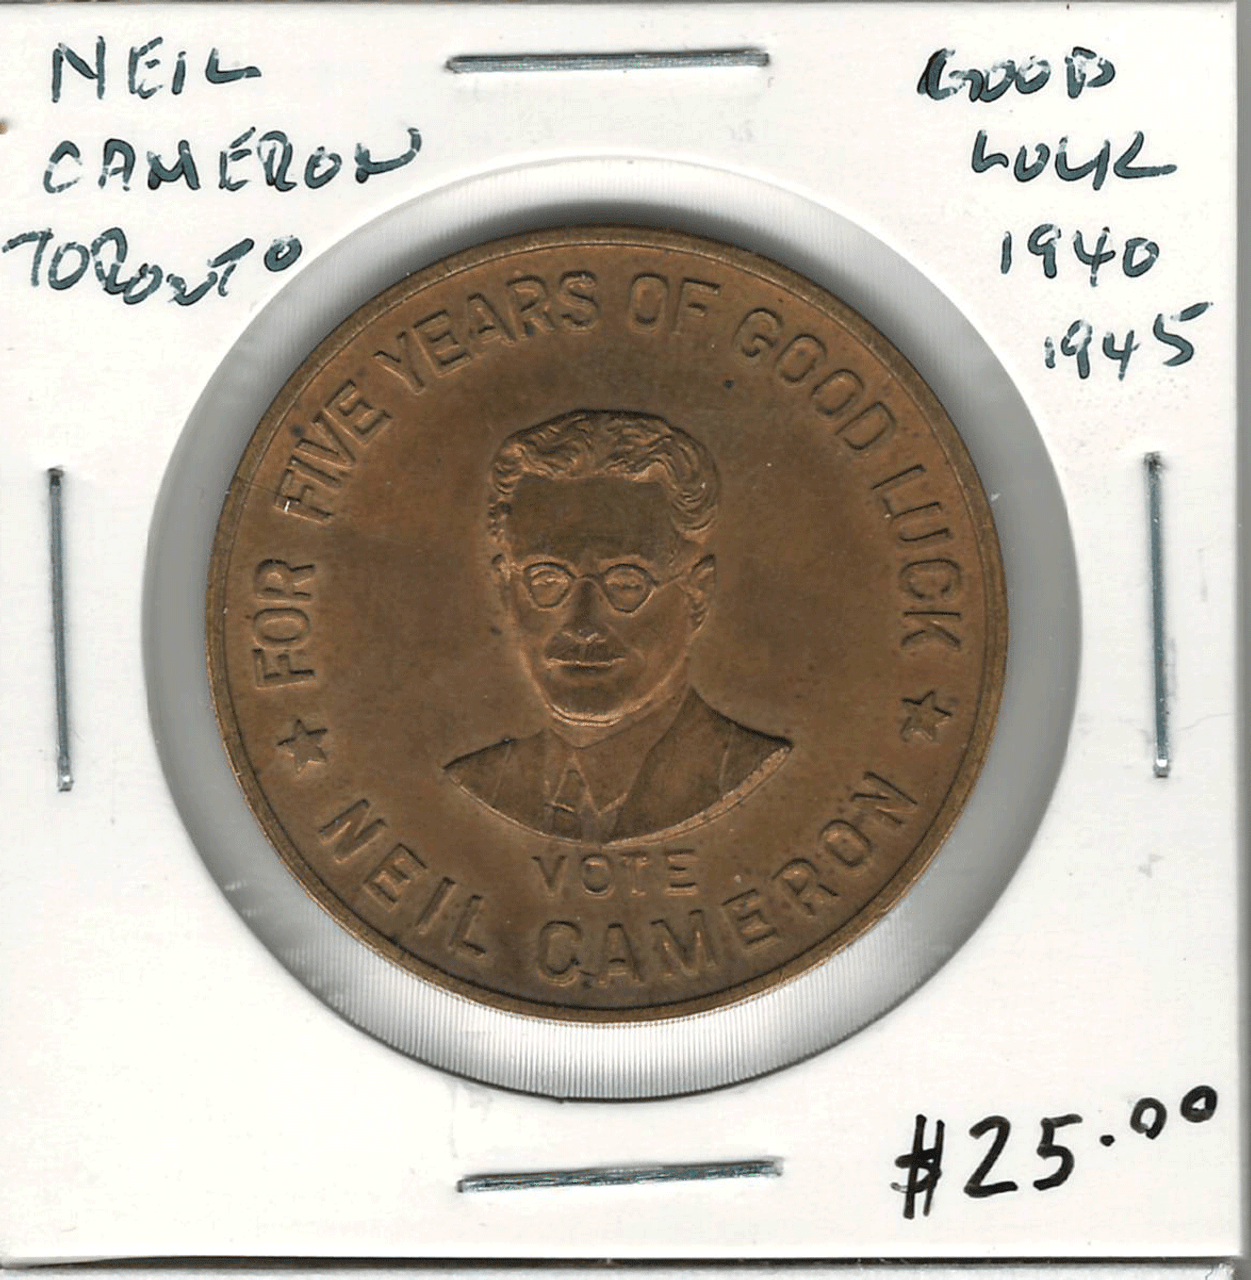 Canada: Neil Cameron Toronto Good Luck 1940 1945 Token London Coin  Centre Inc.